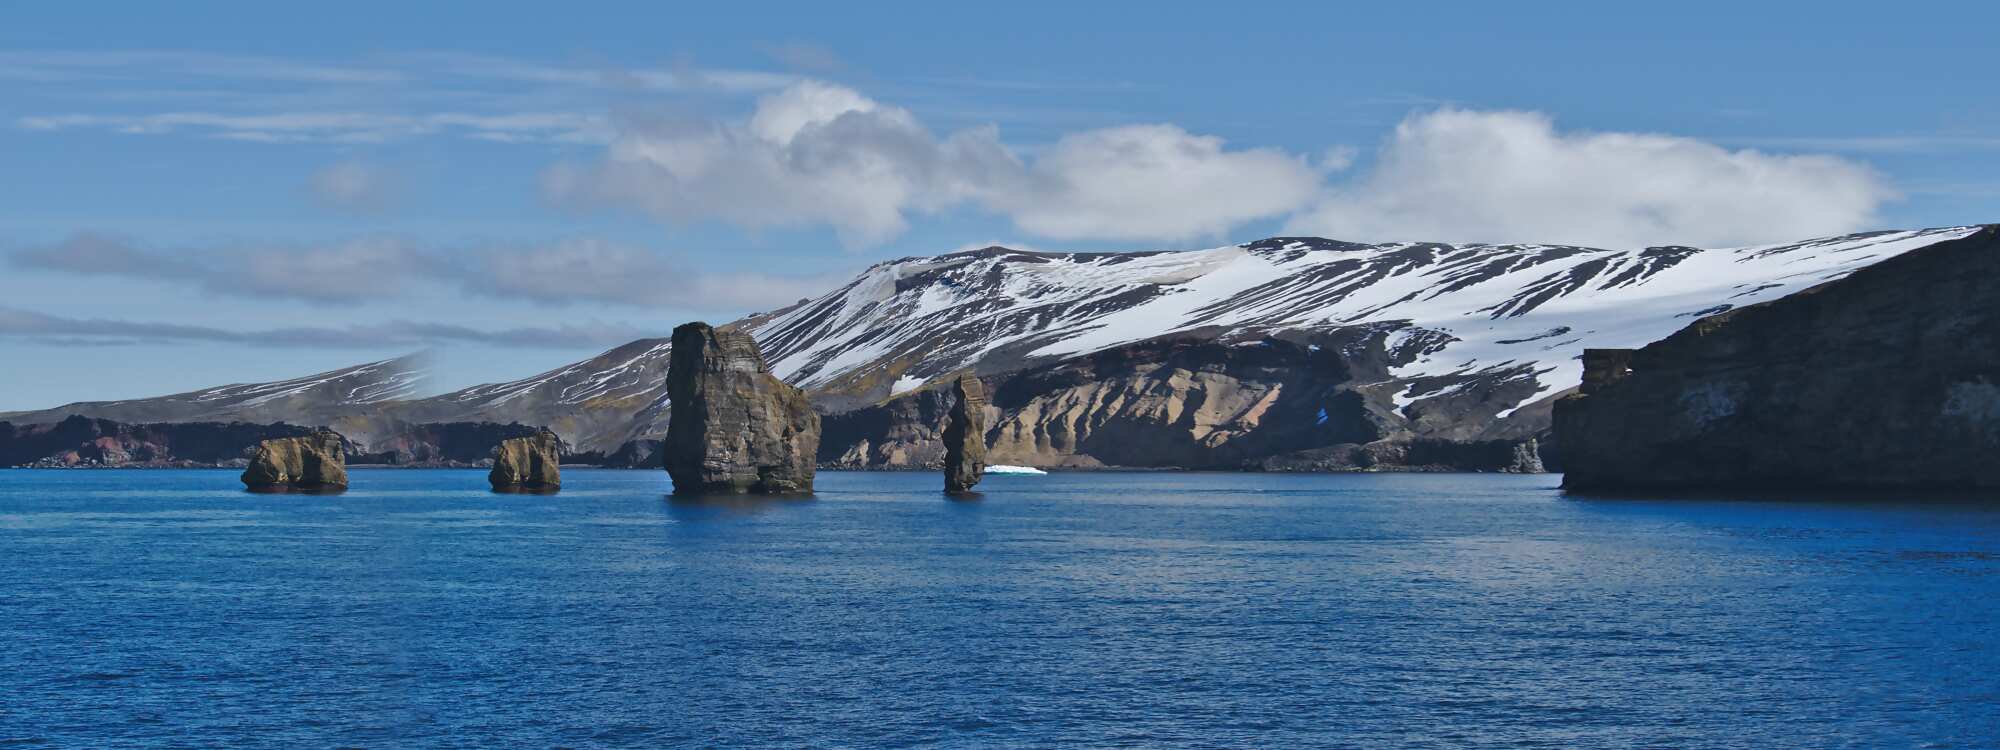 Deception Island - Insel der Täuschung in der Region Antarktis